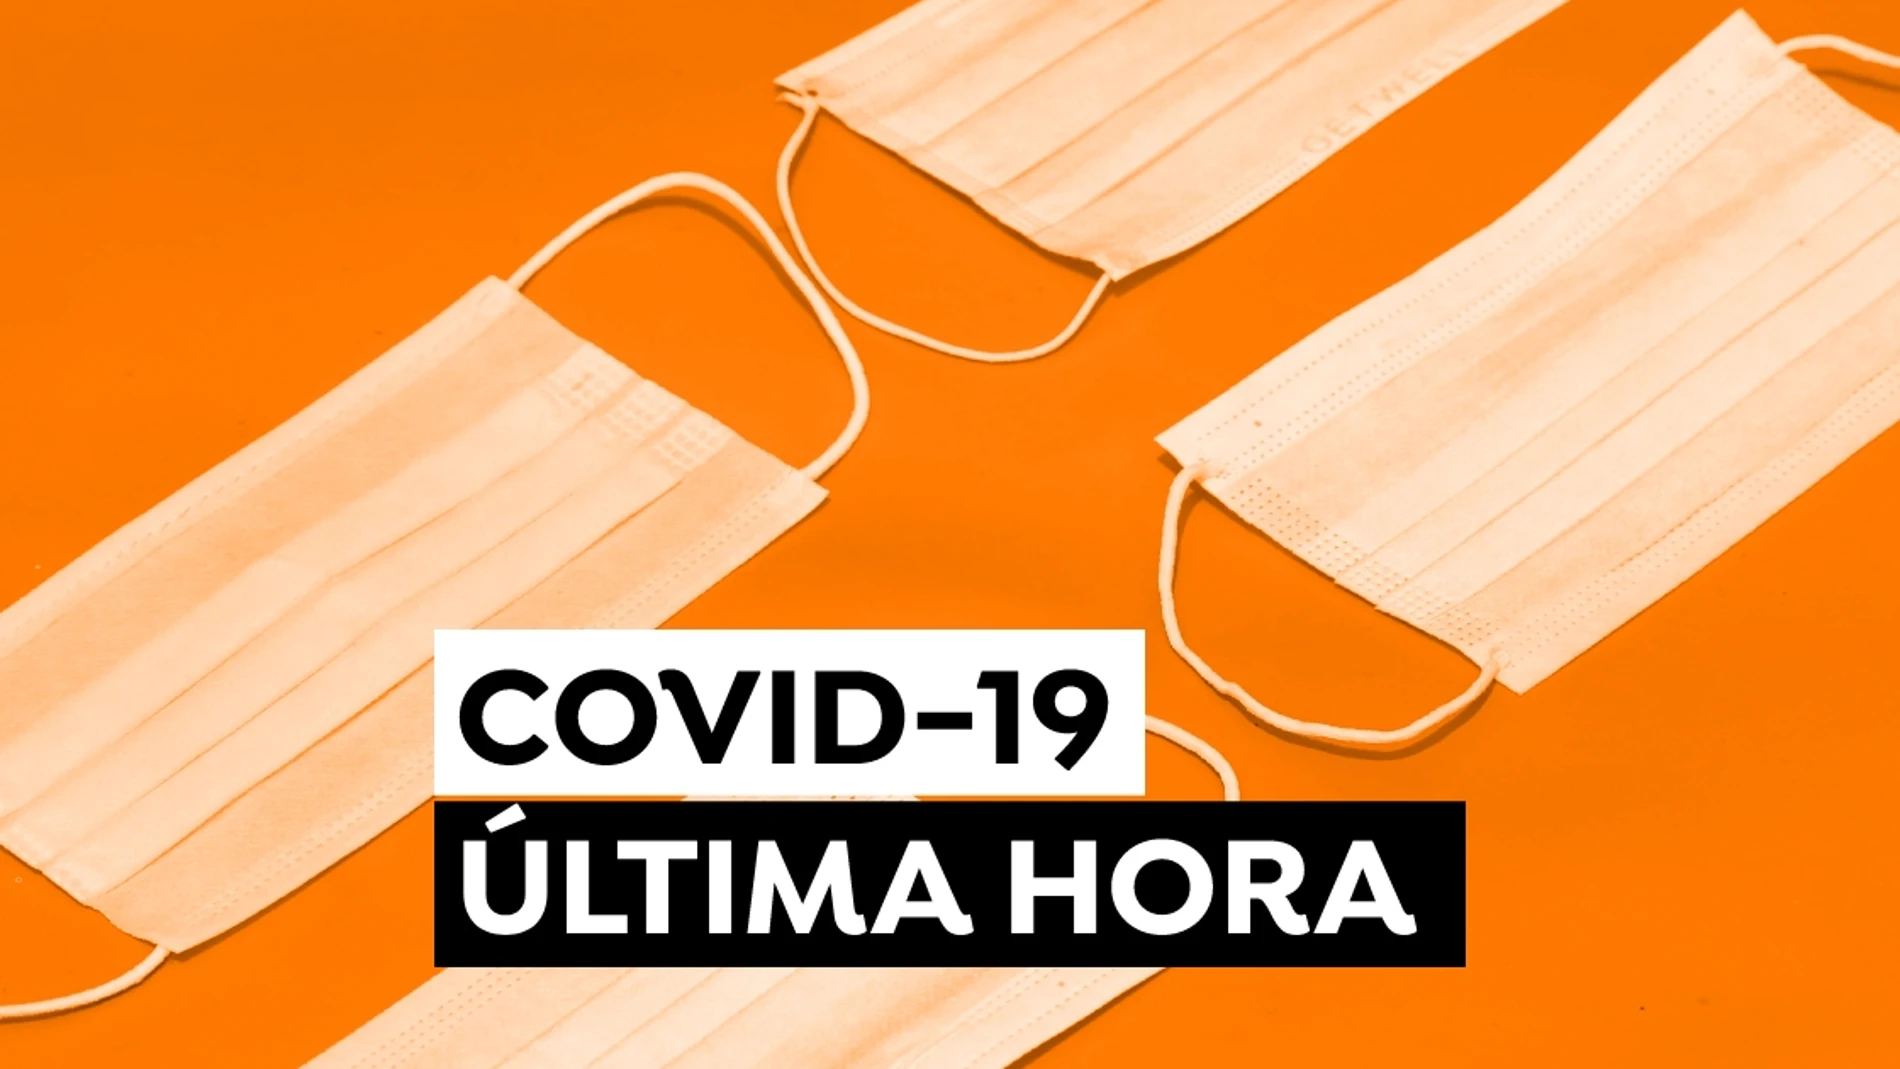 Coronavirus en España hoy, última hora del COVID-19